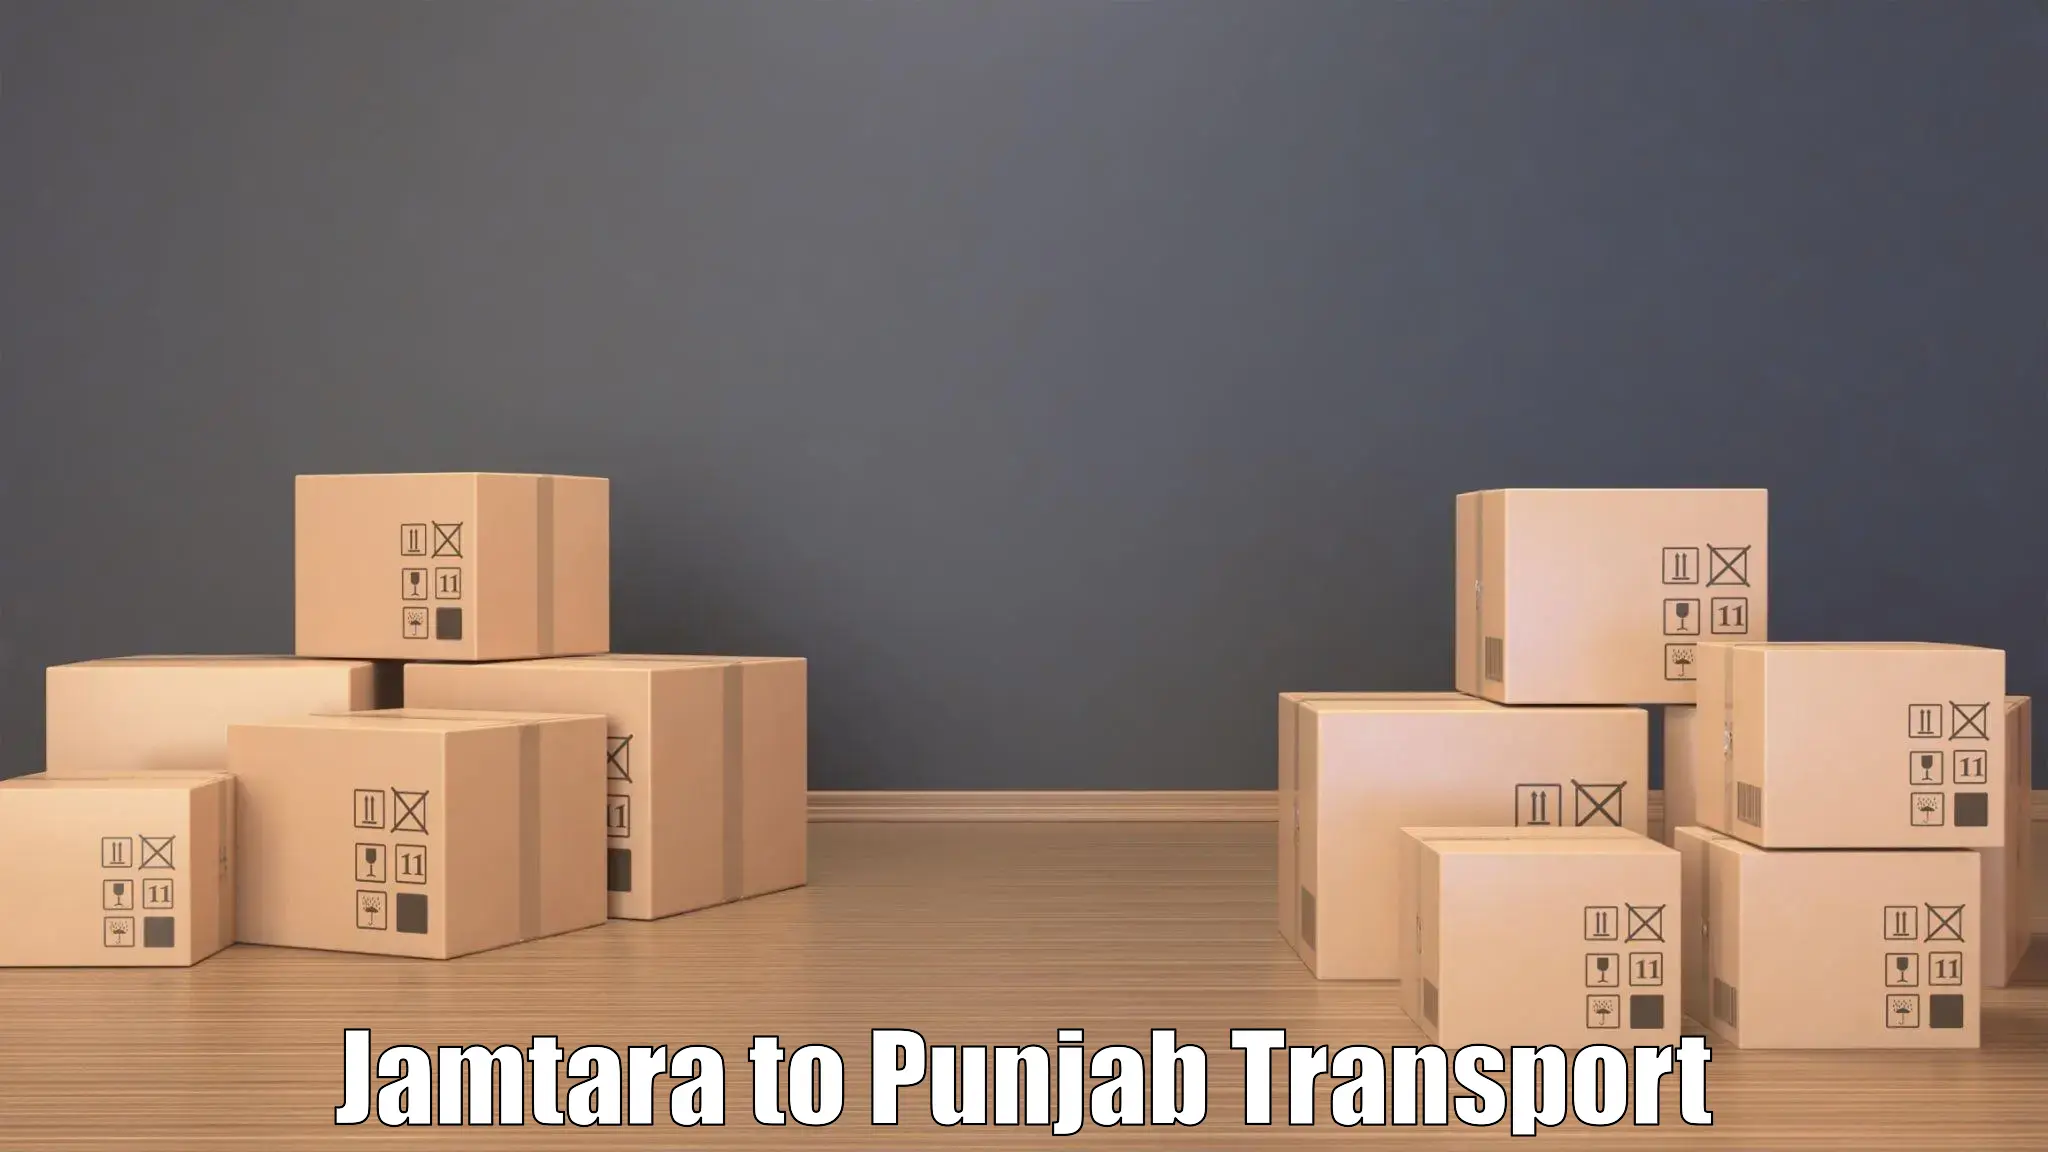 Sending bike to another city Jamtara to Talwara